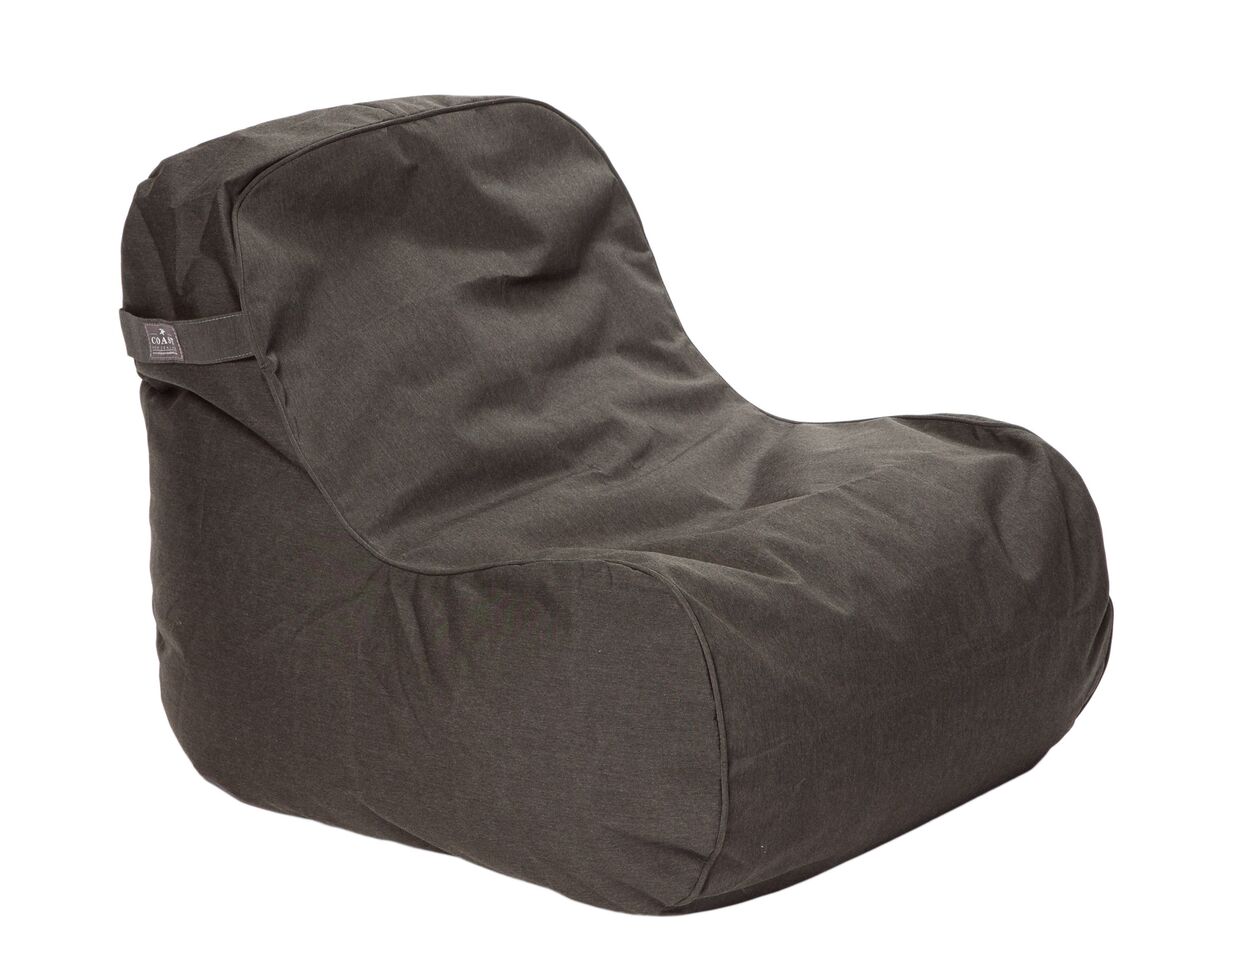 Product Details COAST Marine Bean Chair